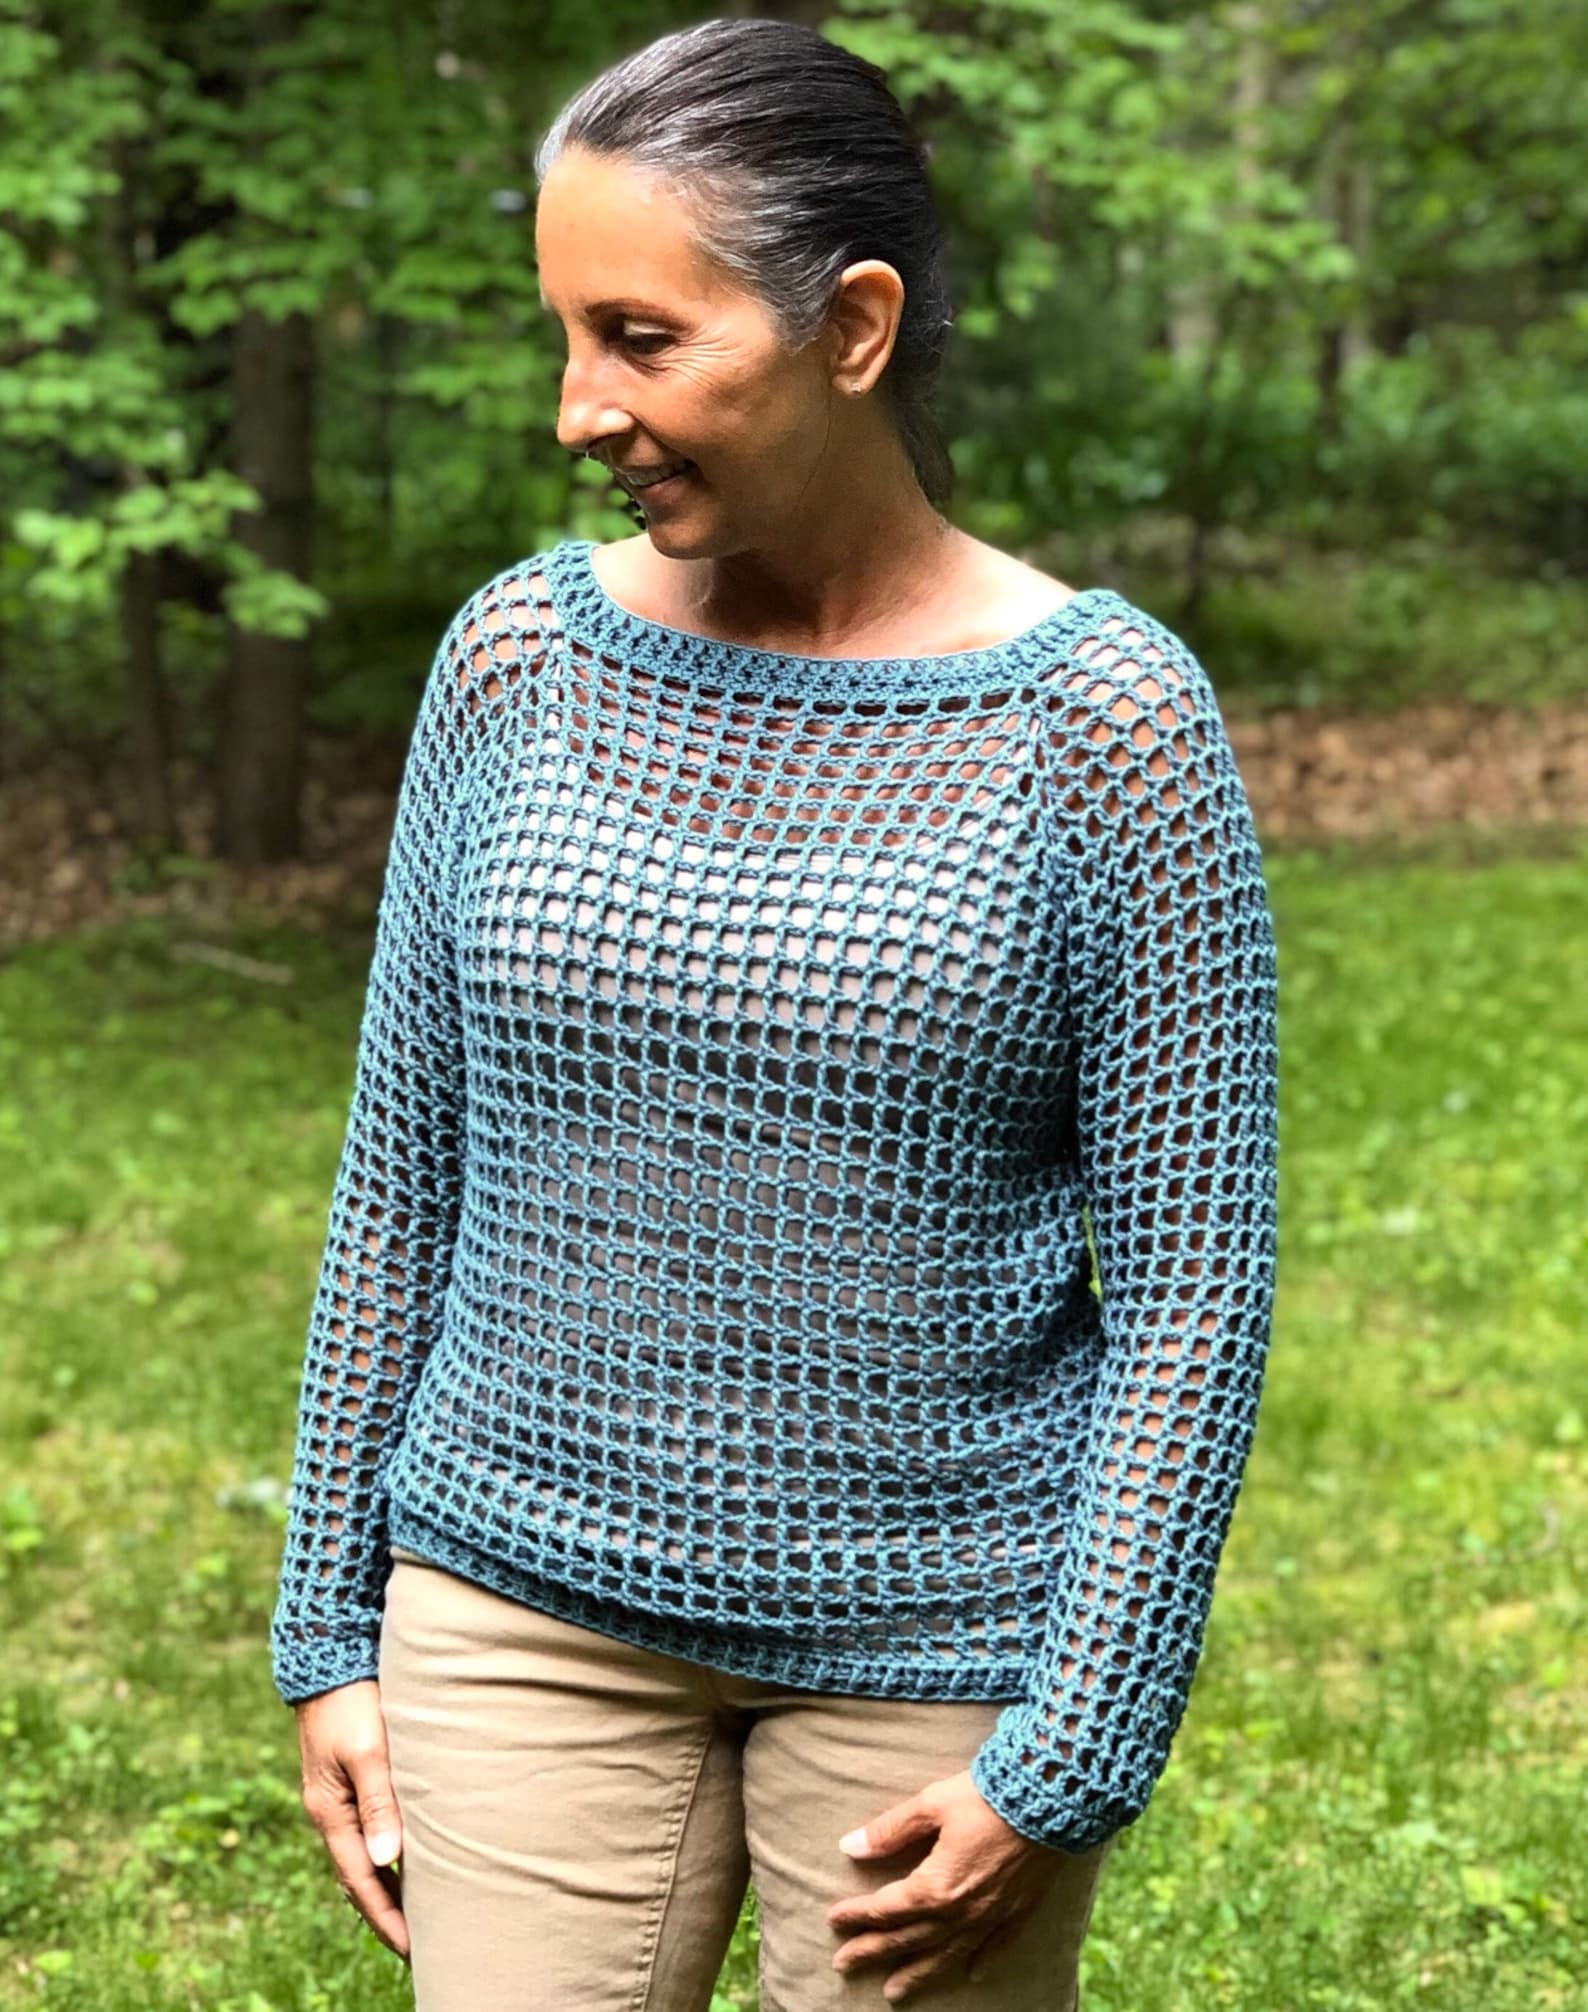 Summer Boho Sweater CROCHET PATTERN in 5 sizes | Etsy